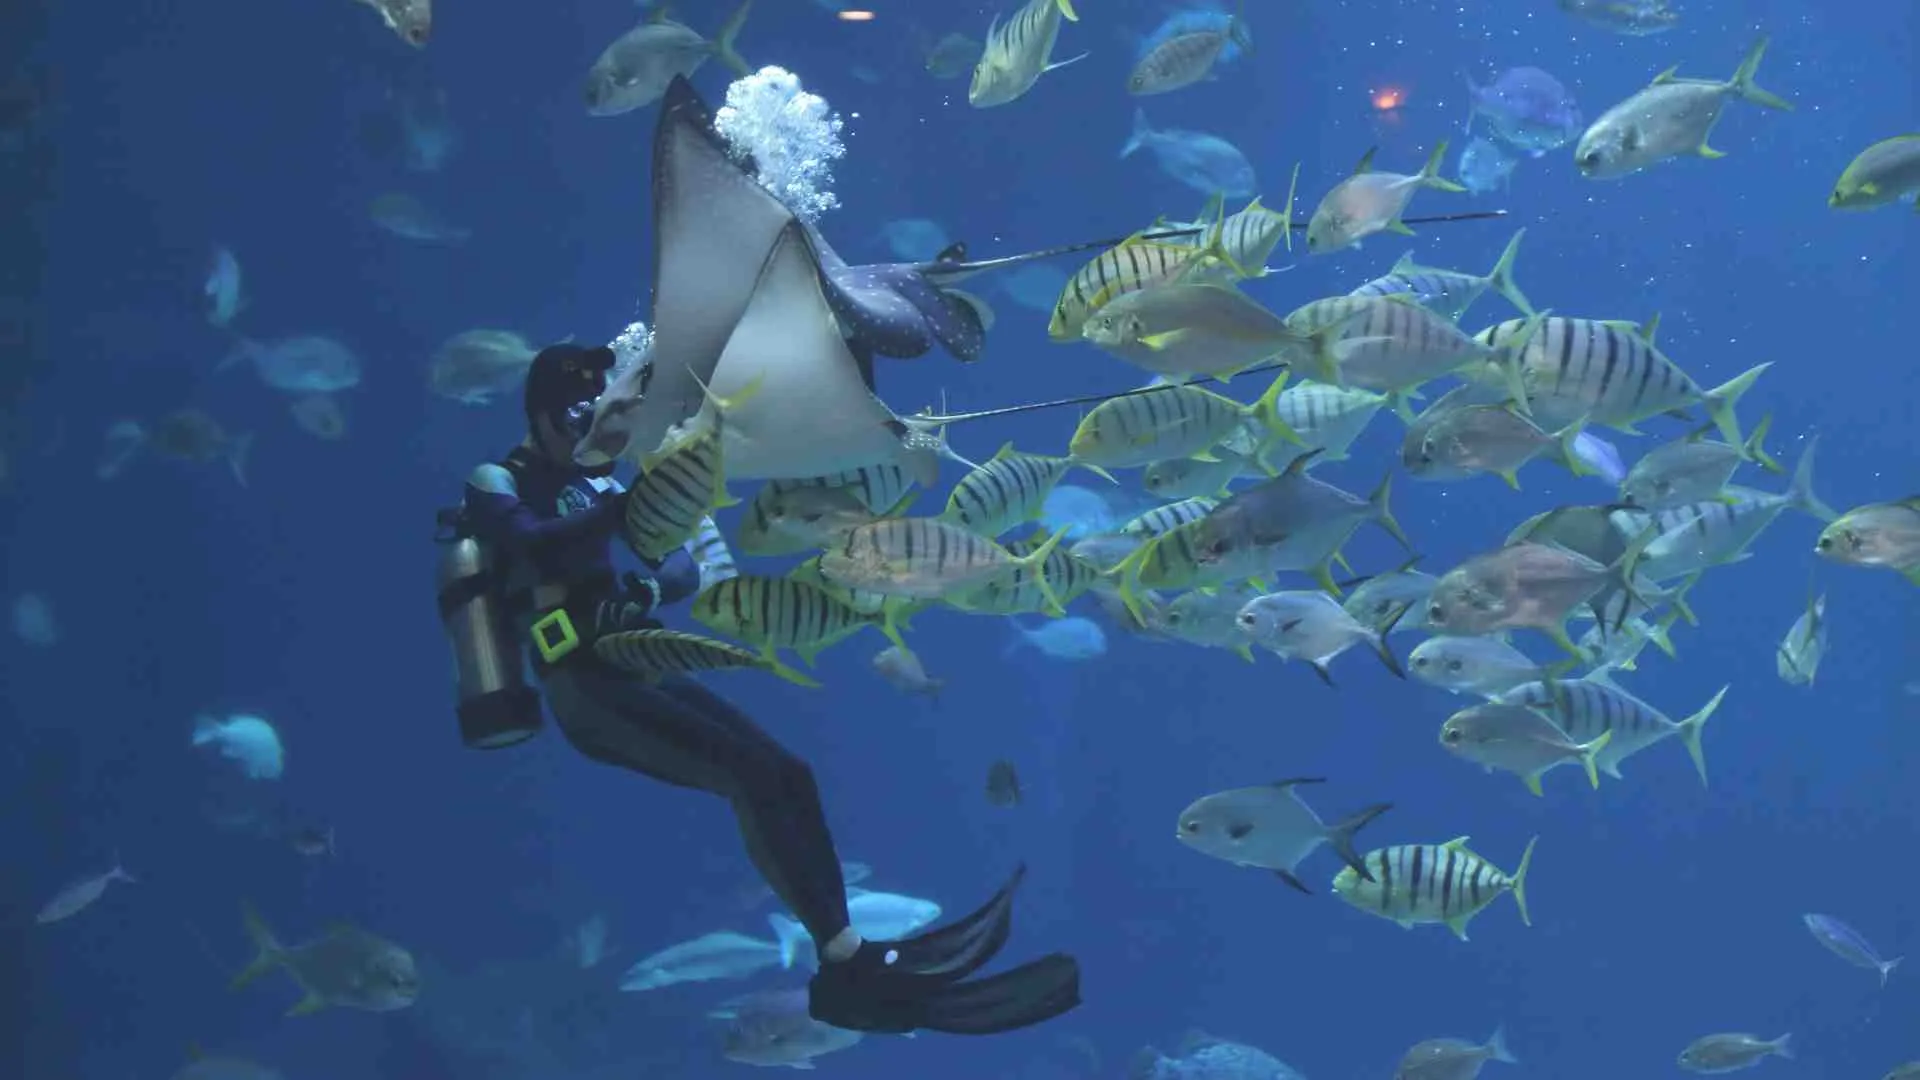 Jacques Yves Cousteau scuba diving